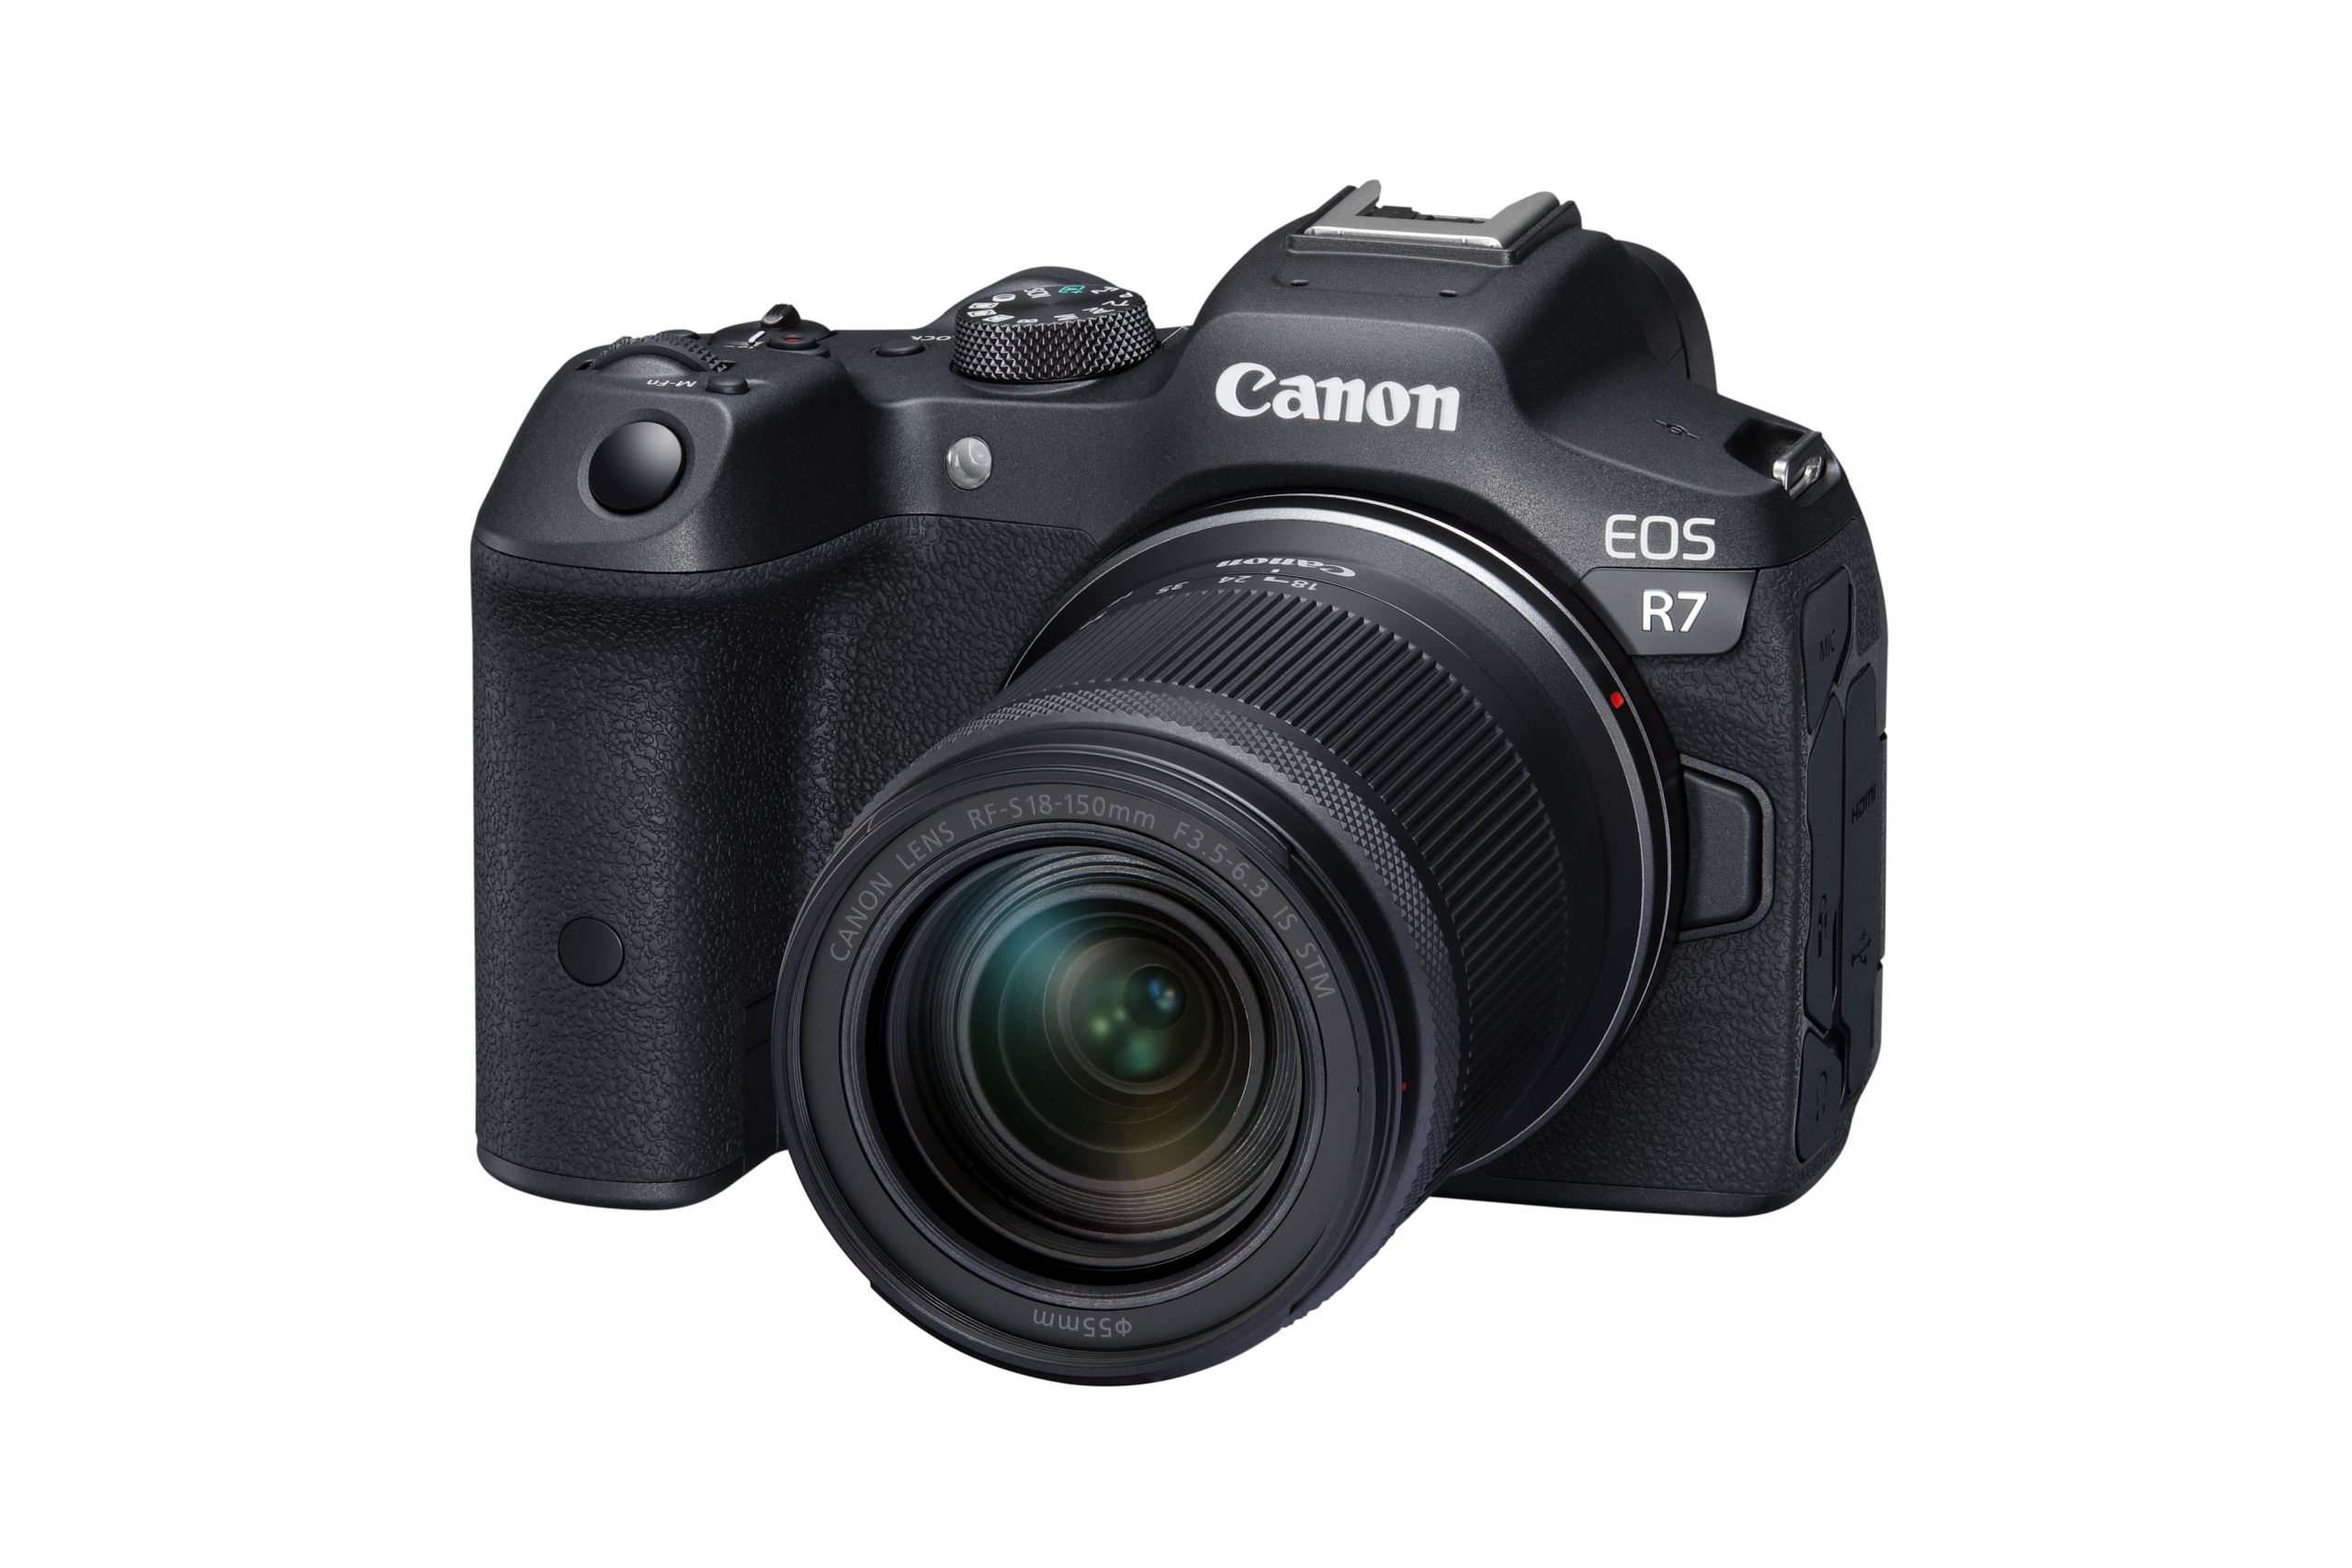 Canon 全新 EOS R7 APS-C 無反光鏡相機搭配全新 RF-S 18-150mm f/3.5-6.3 IS STM 高倍率變焦鏡，精彩追焦快穩準震撼登場 @3C 達人廖阿輝